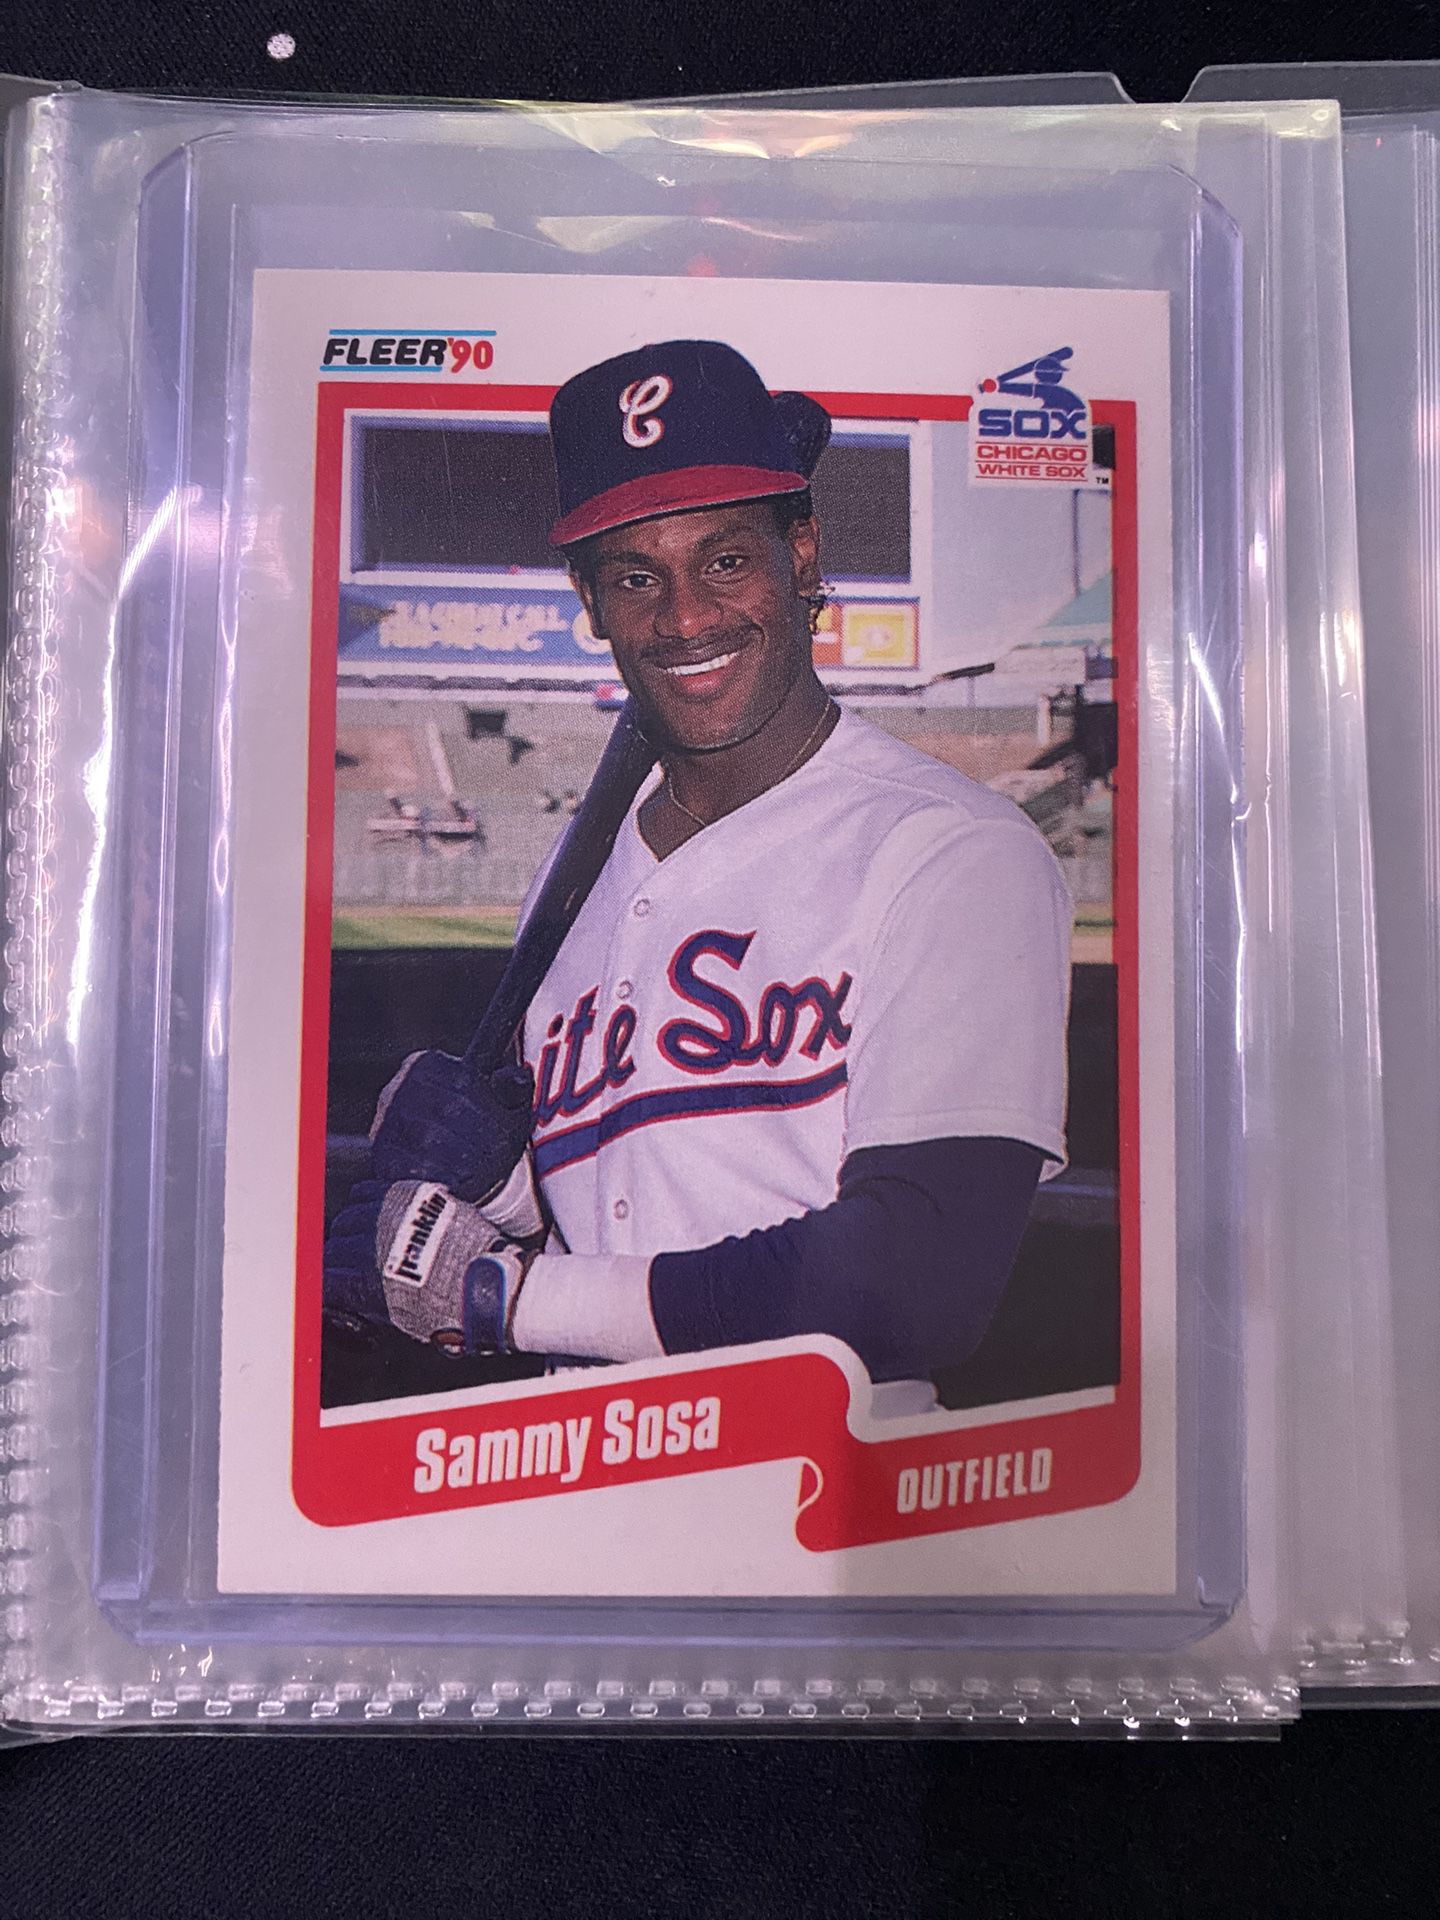 Sammy Sosa fleer 90 card (Double Error) D.O.B. error and D.R. error 